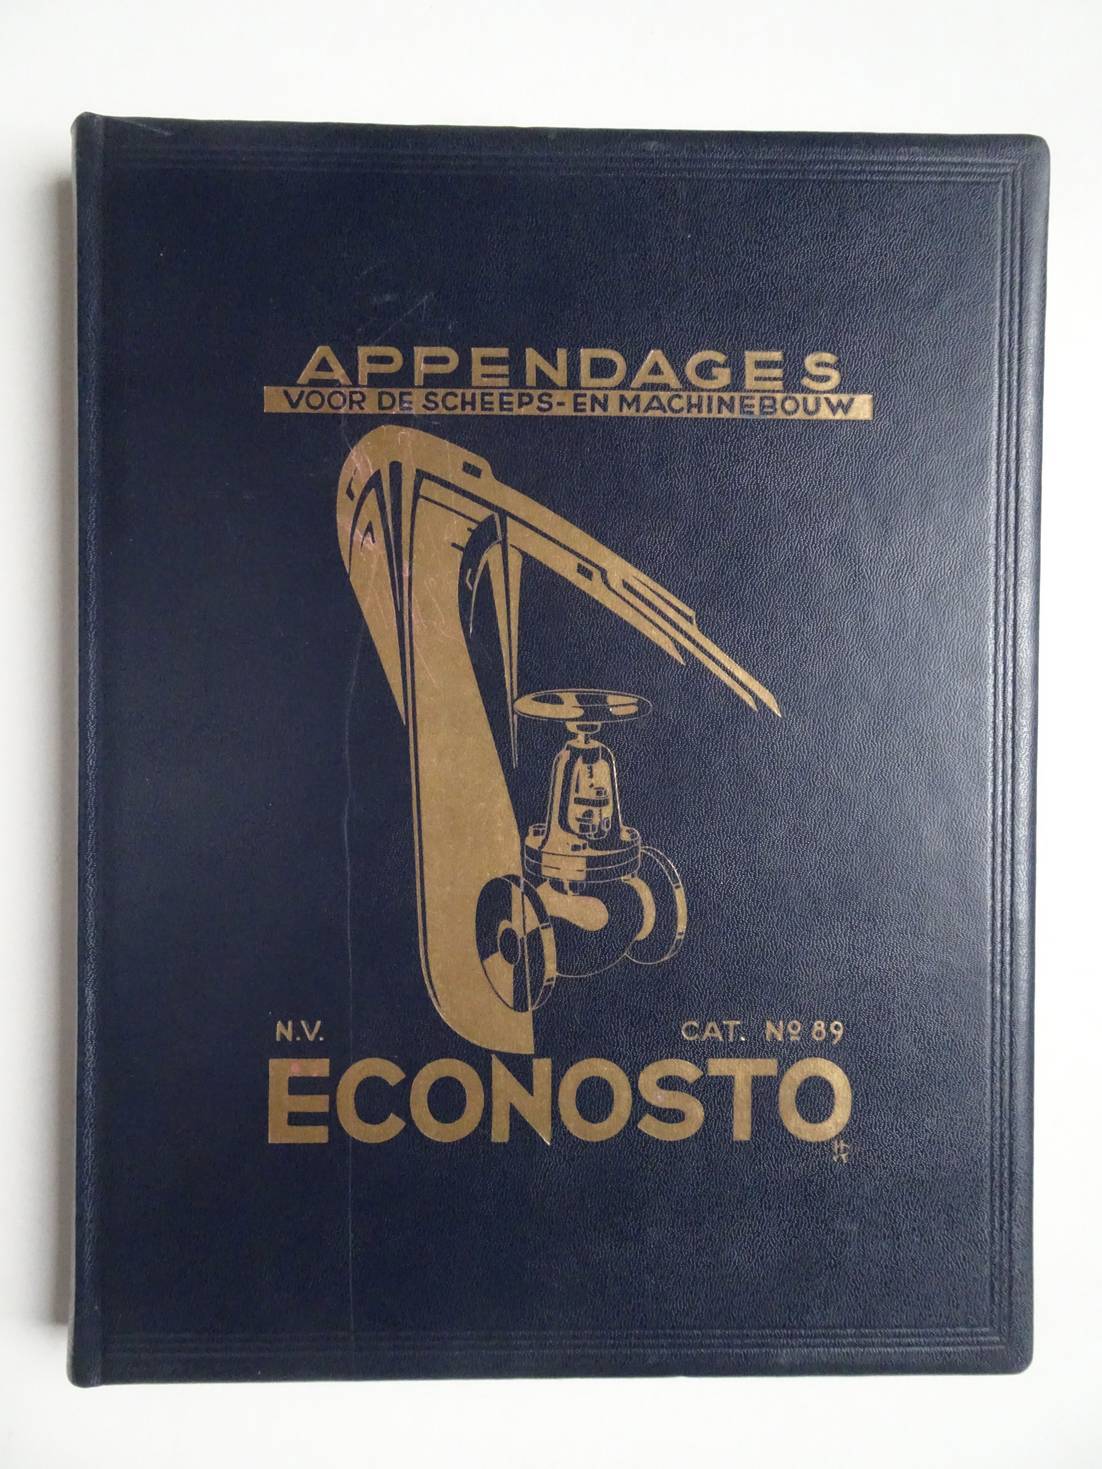 N.n.. - N.V. Econosto Bureau voor Economische Stoomproductie. Appendage-Catalogus No. 89 voor de Scheeps- en Machinebouw.